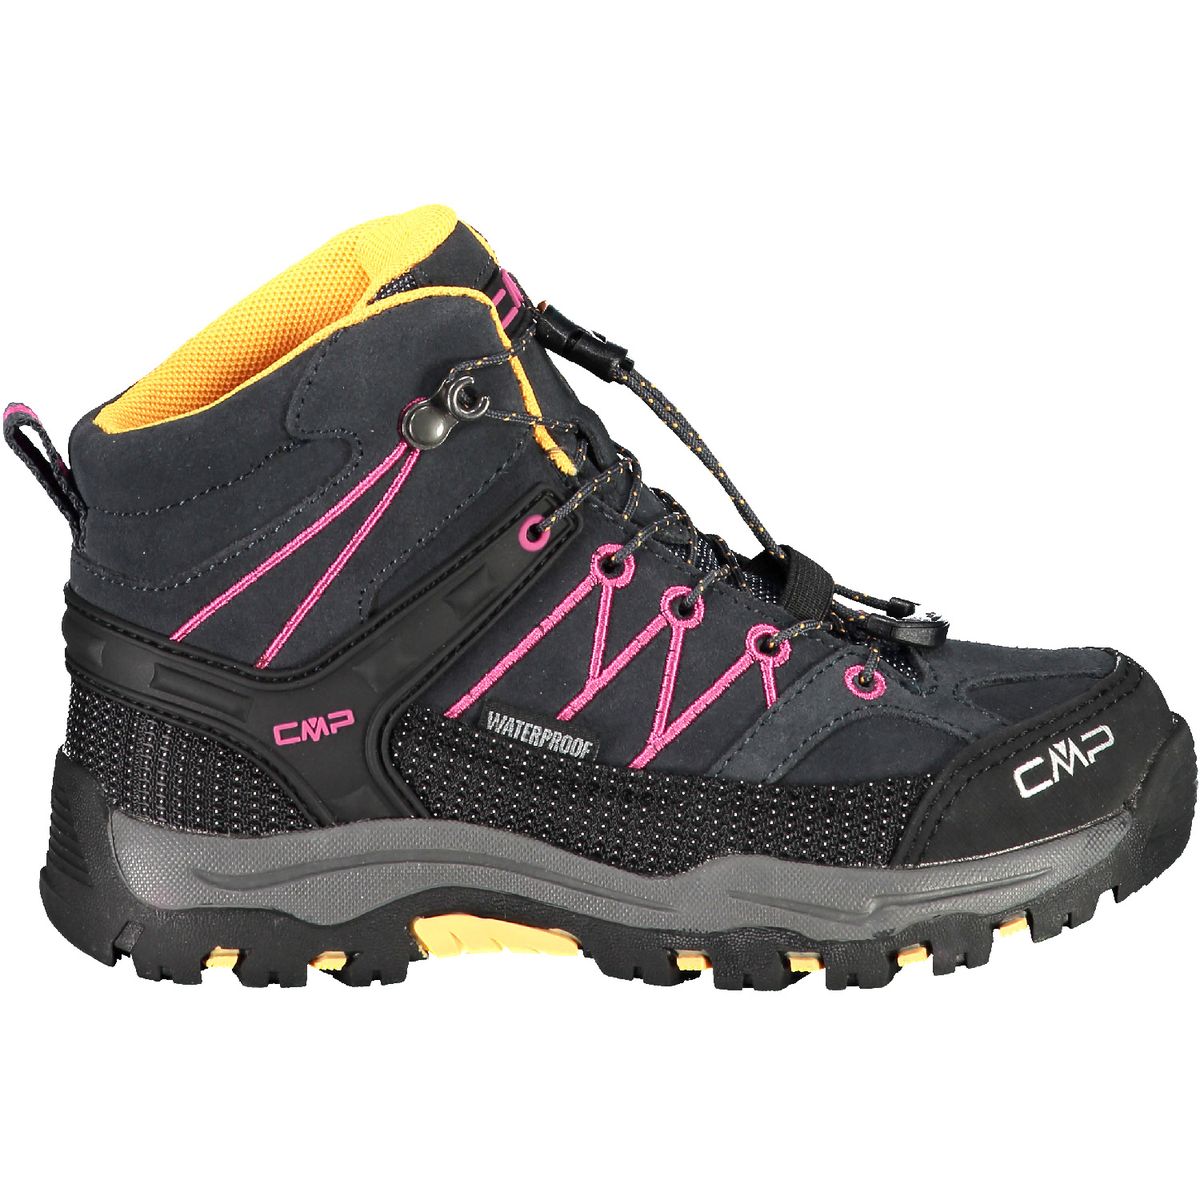 CMP Rigel Mid Trekking Shoes waterproof Jungen Trekking-Halbschuhe